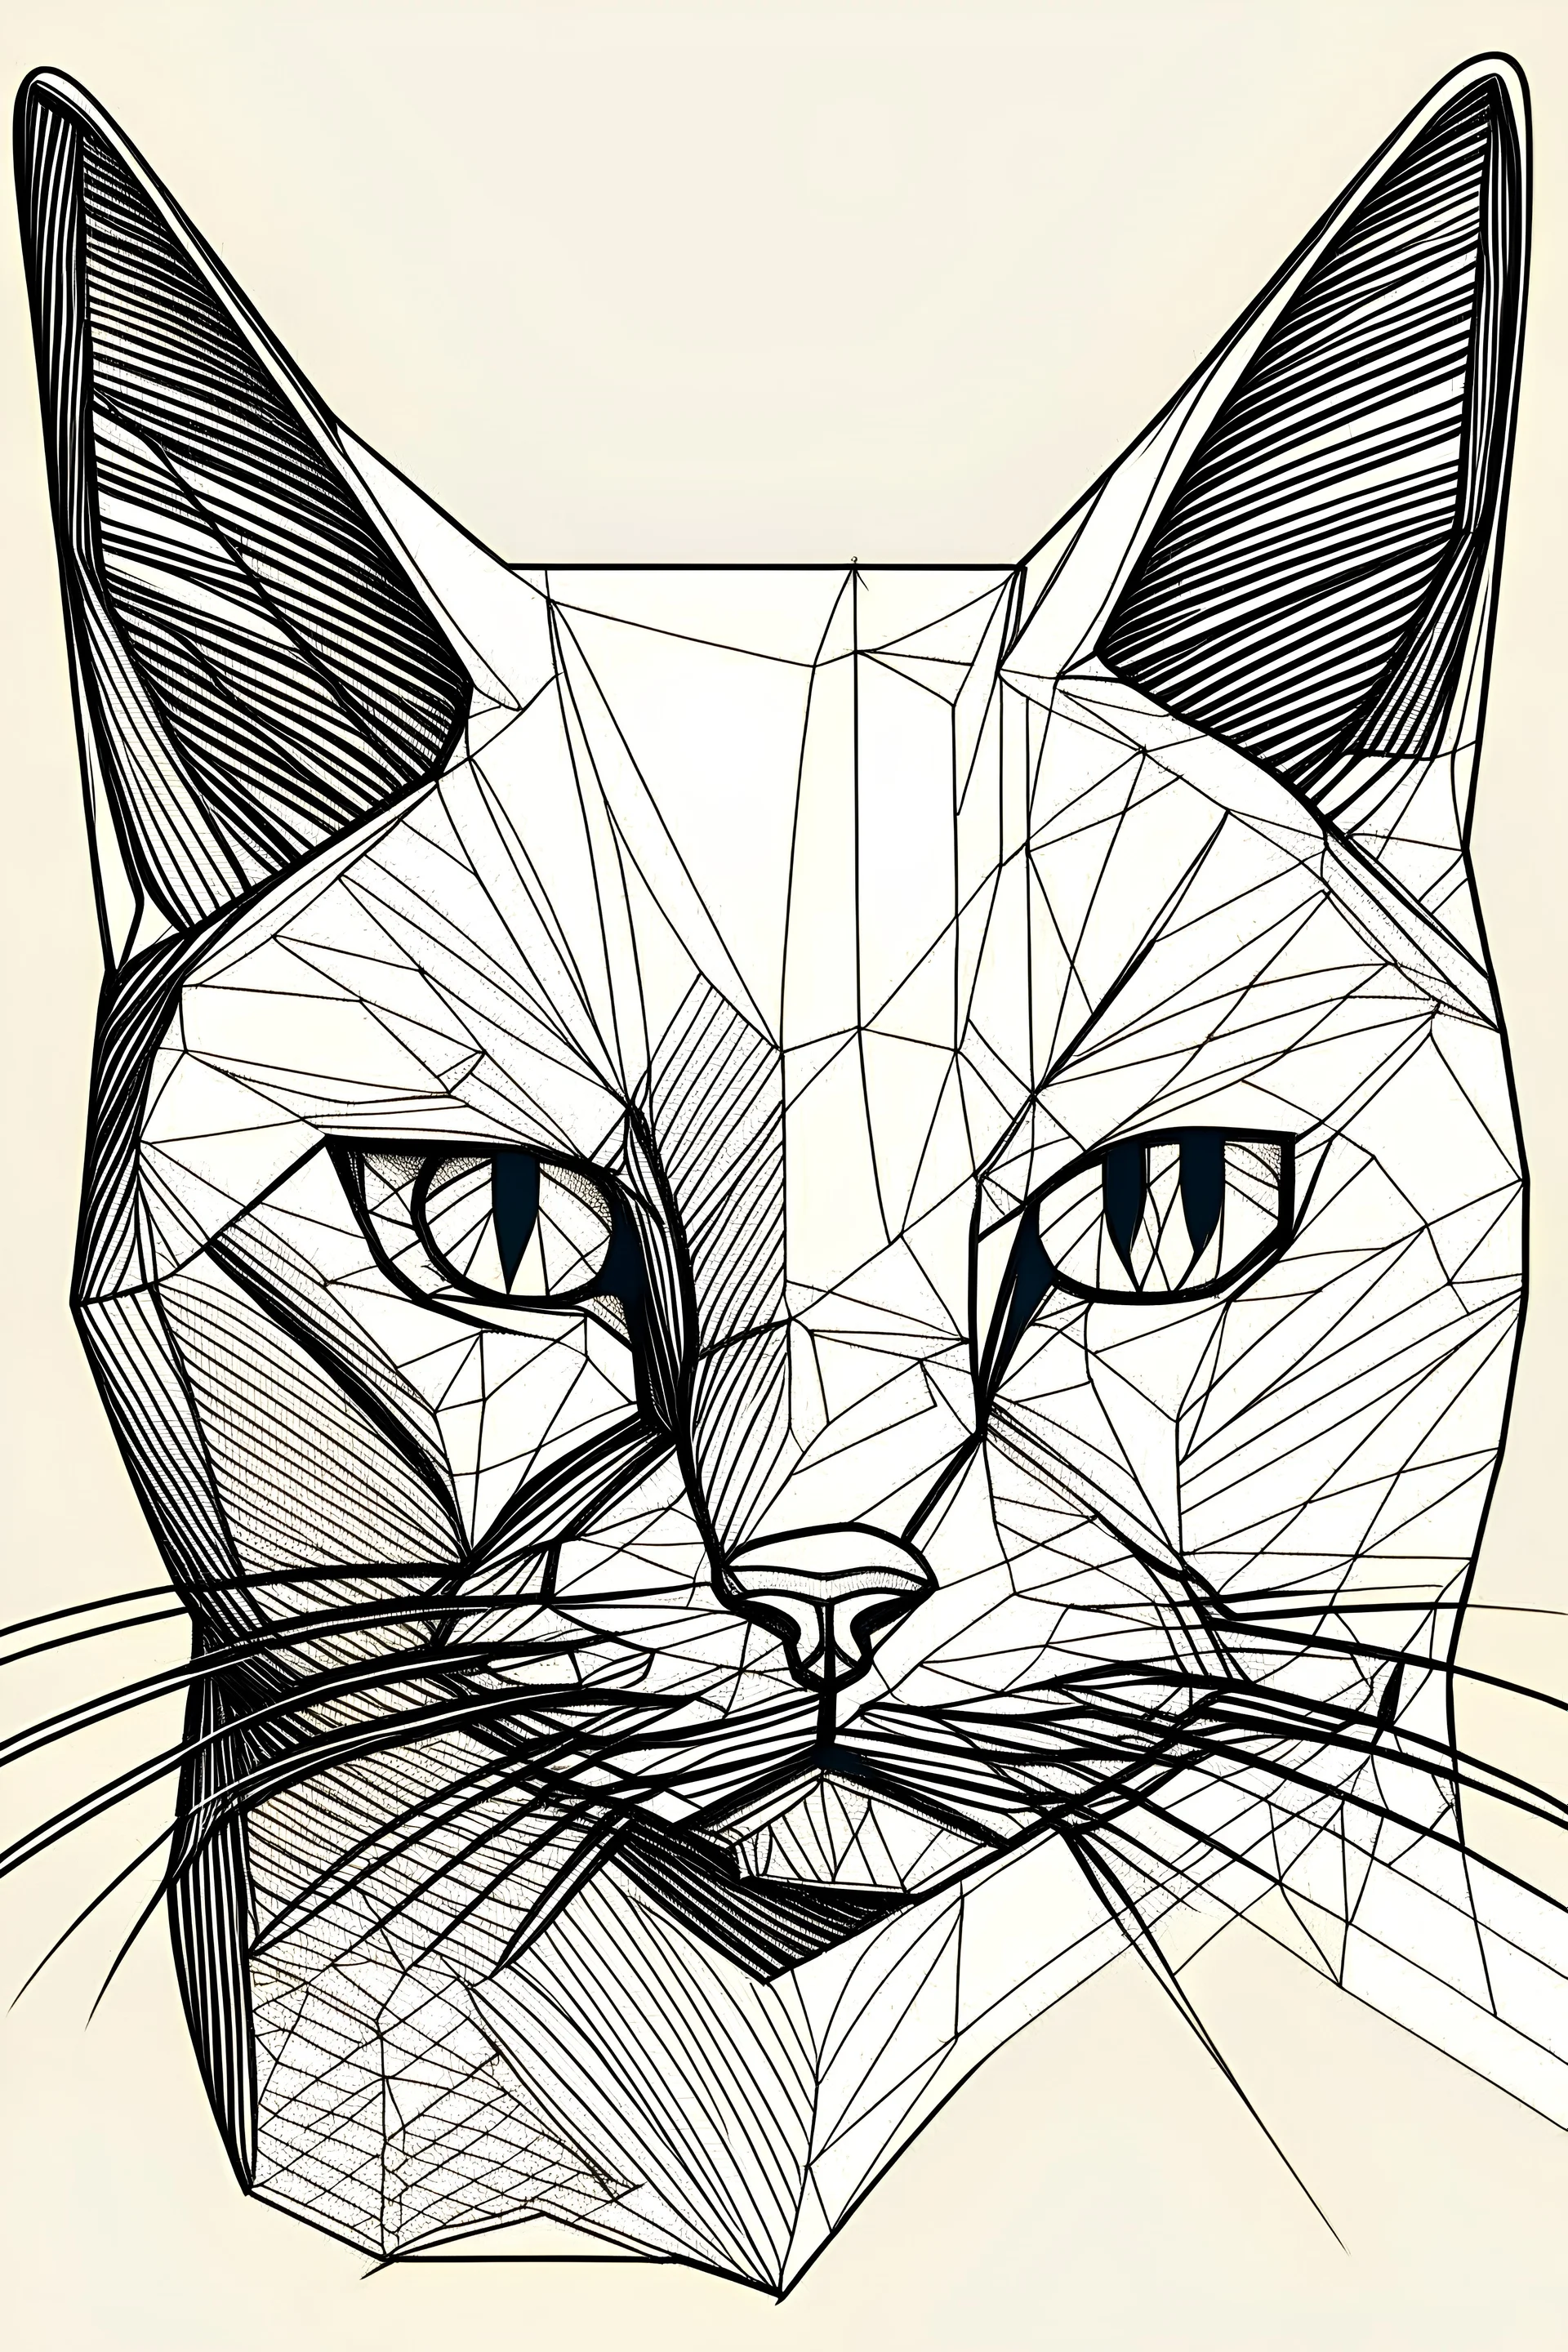 sadece çizgilerden oluşan bir kedi resmi. resim defteri için